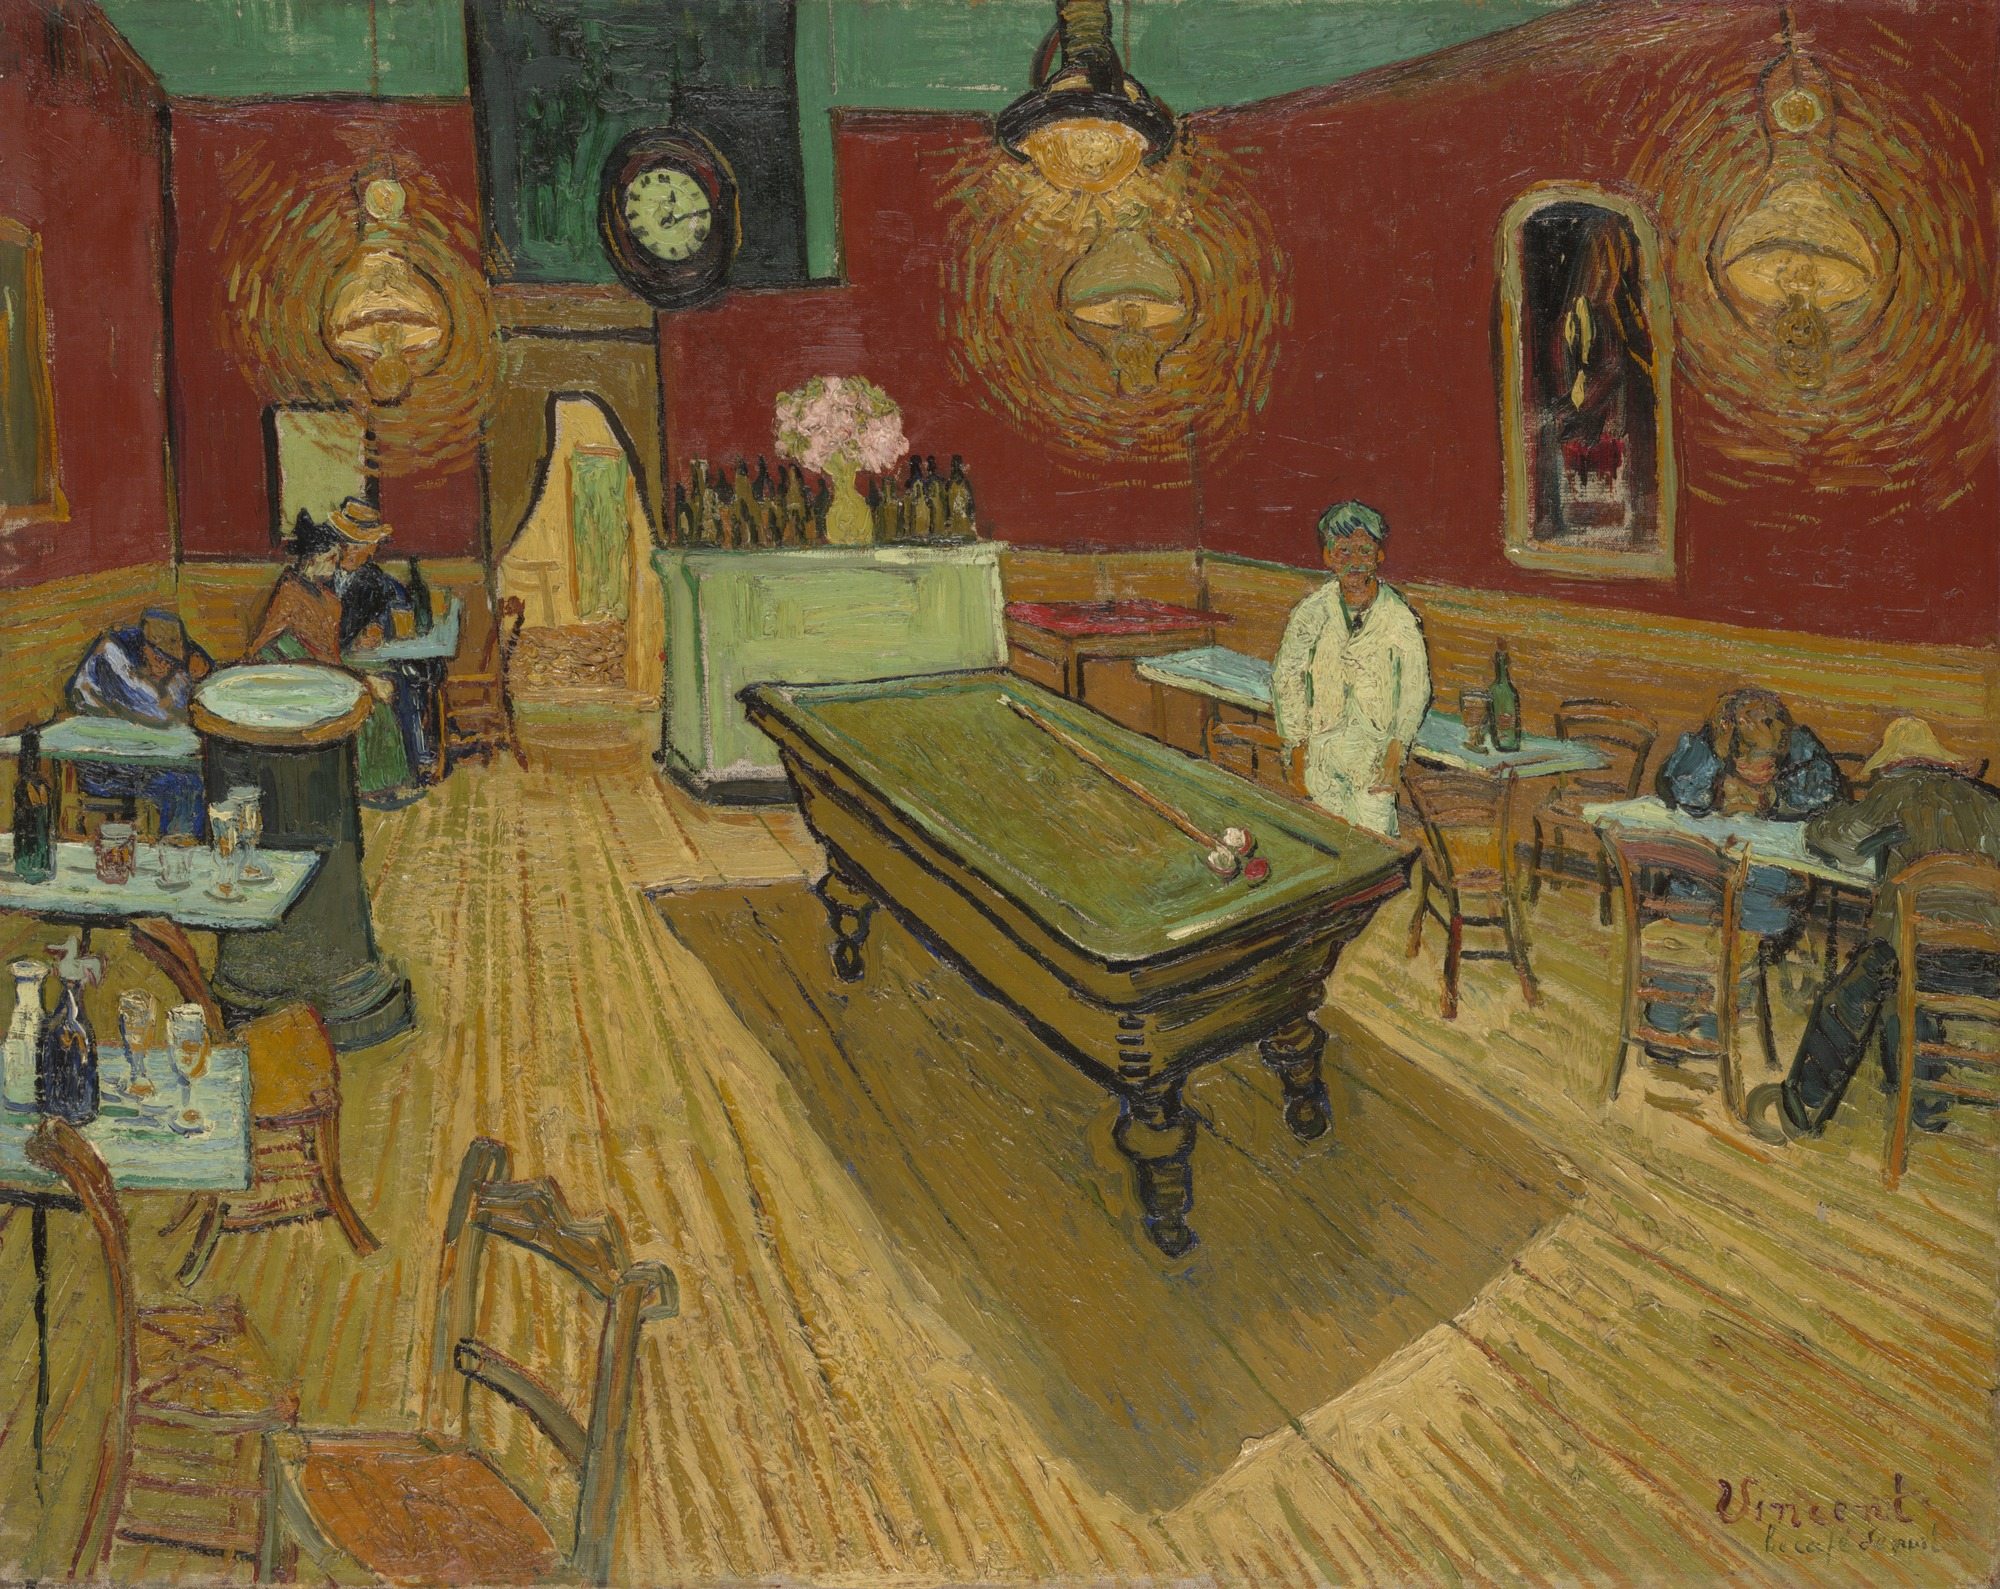 Night Café by Vincent van Gogh - 1888 - 72.4 × 92.1 cm 